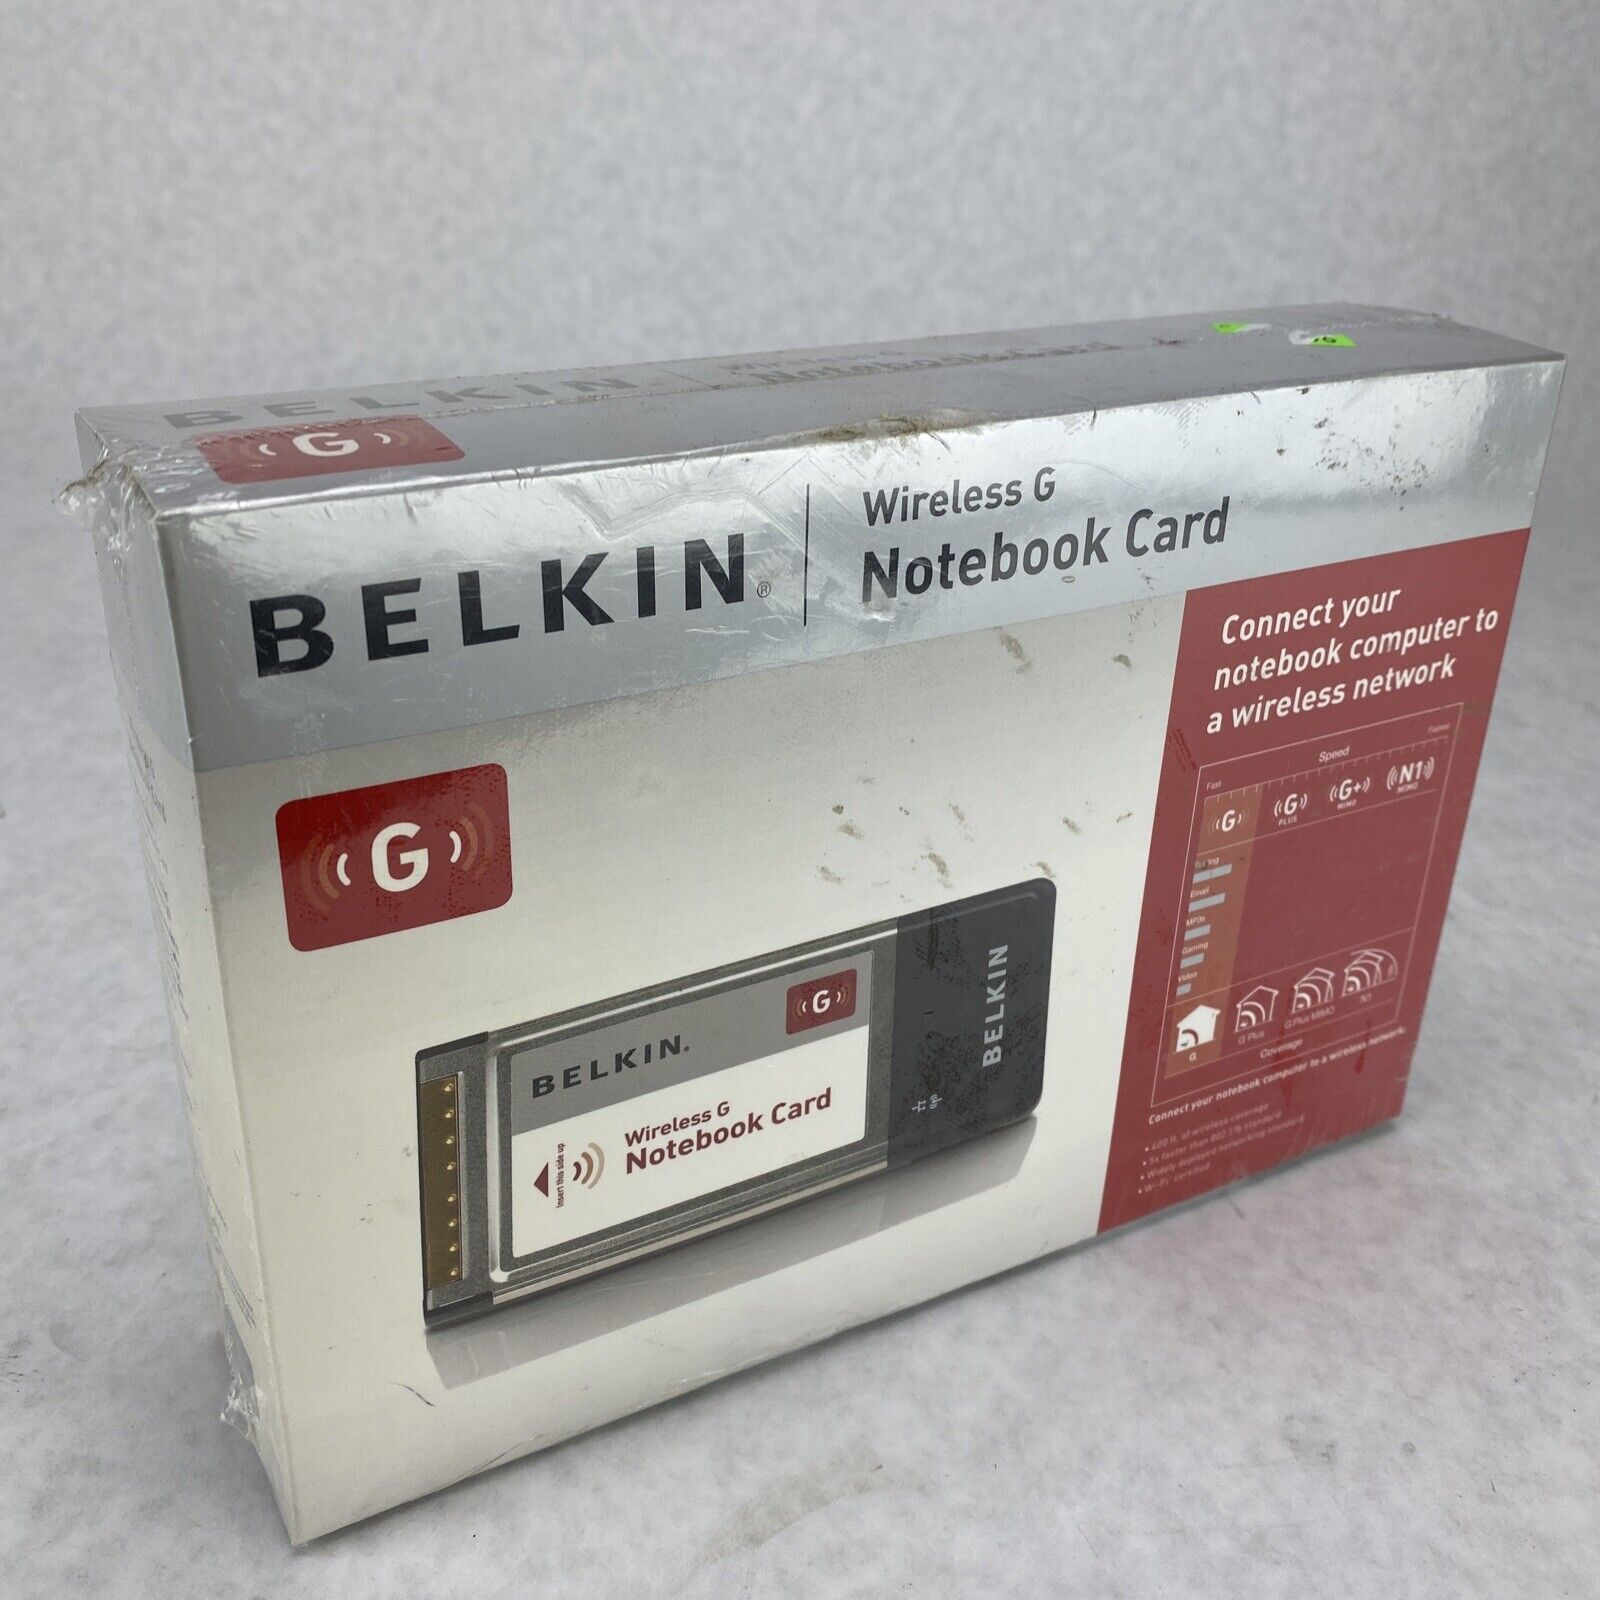 New NOS Belkin Wireless G 802.11g Laptop Notebook WIFI Card Model F5D7010